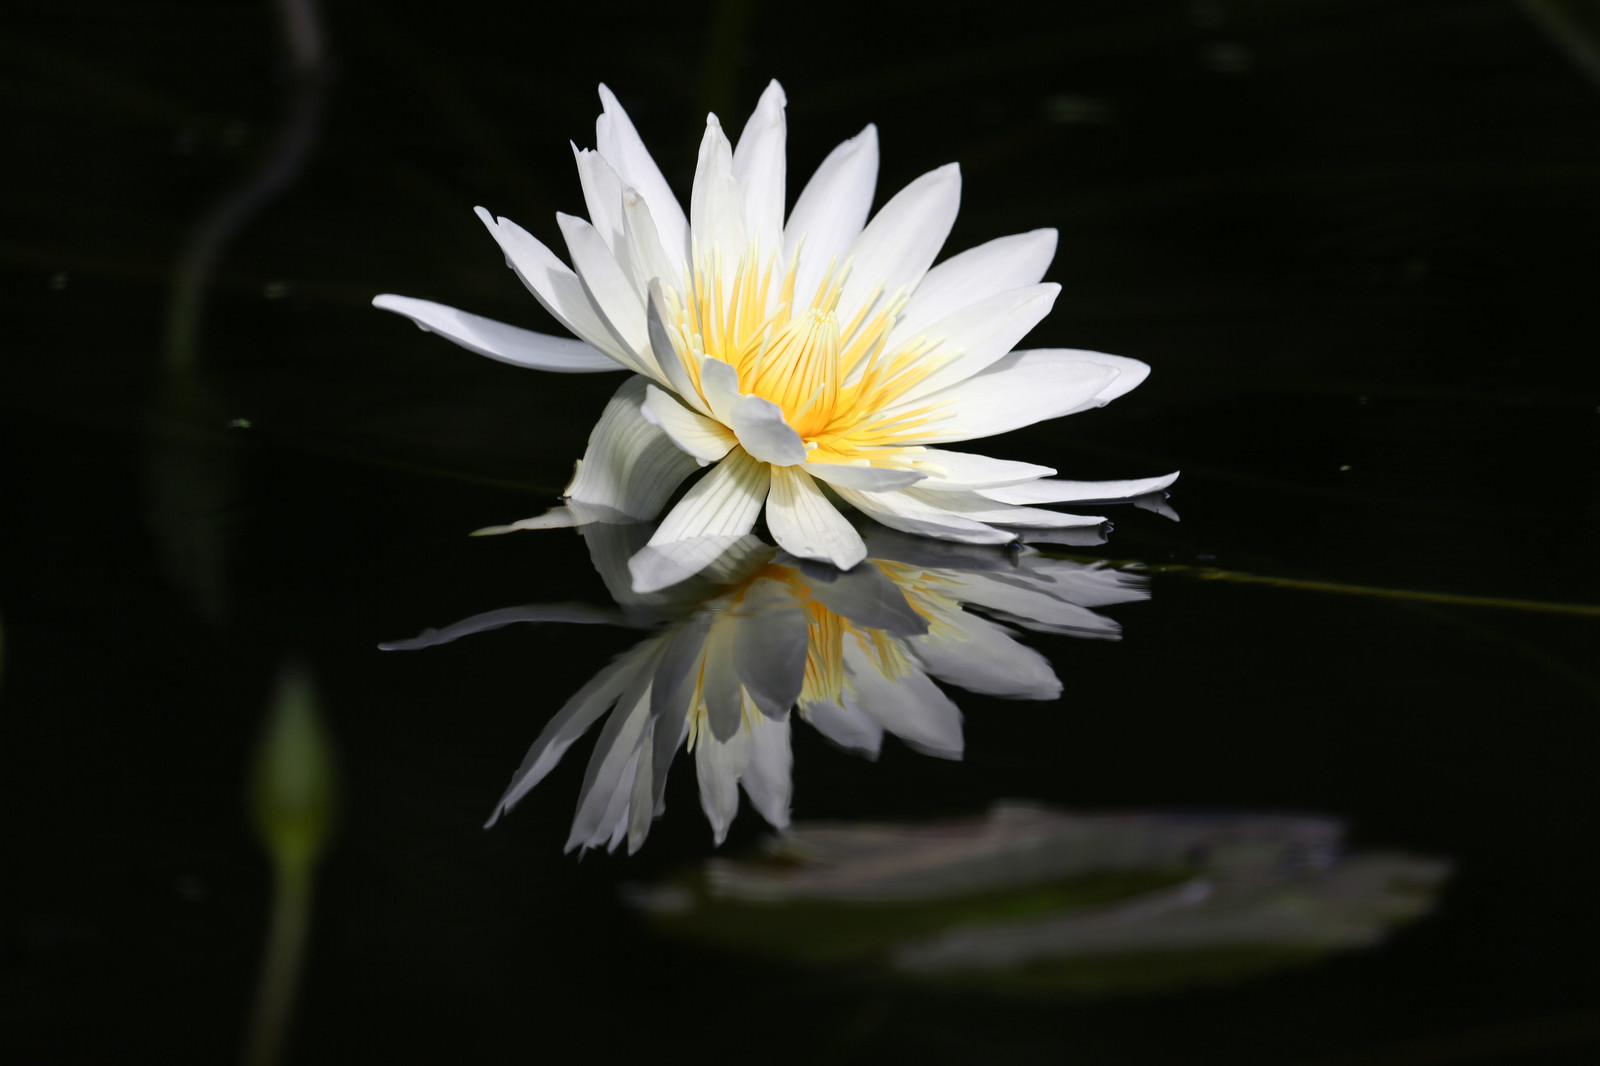 「水面に咲く蓮の花」の写真